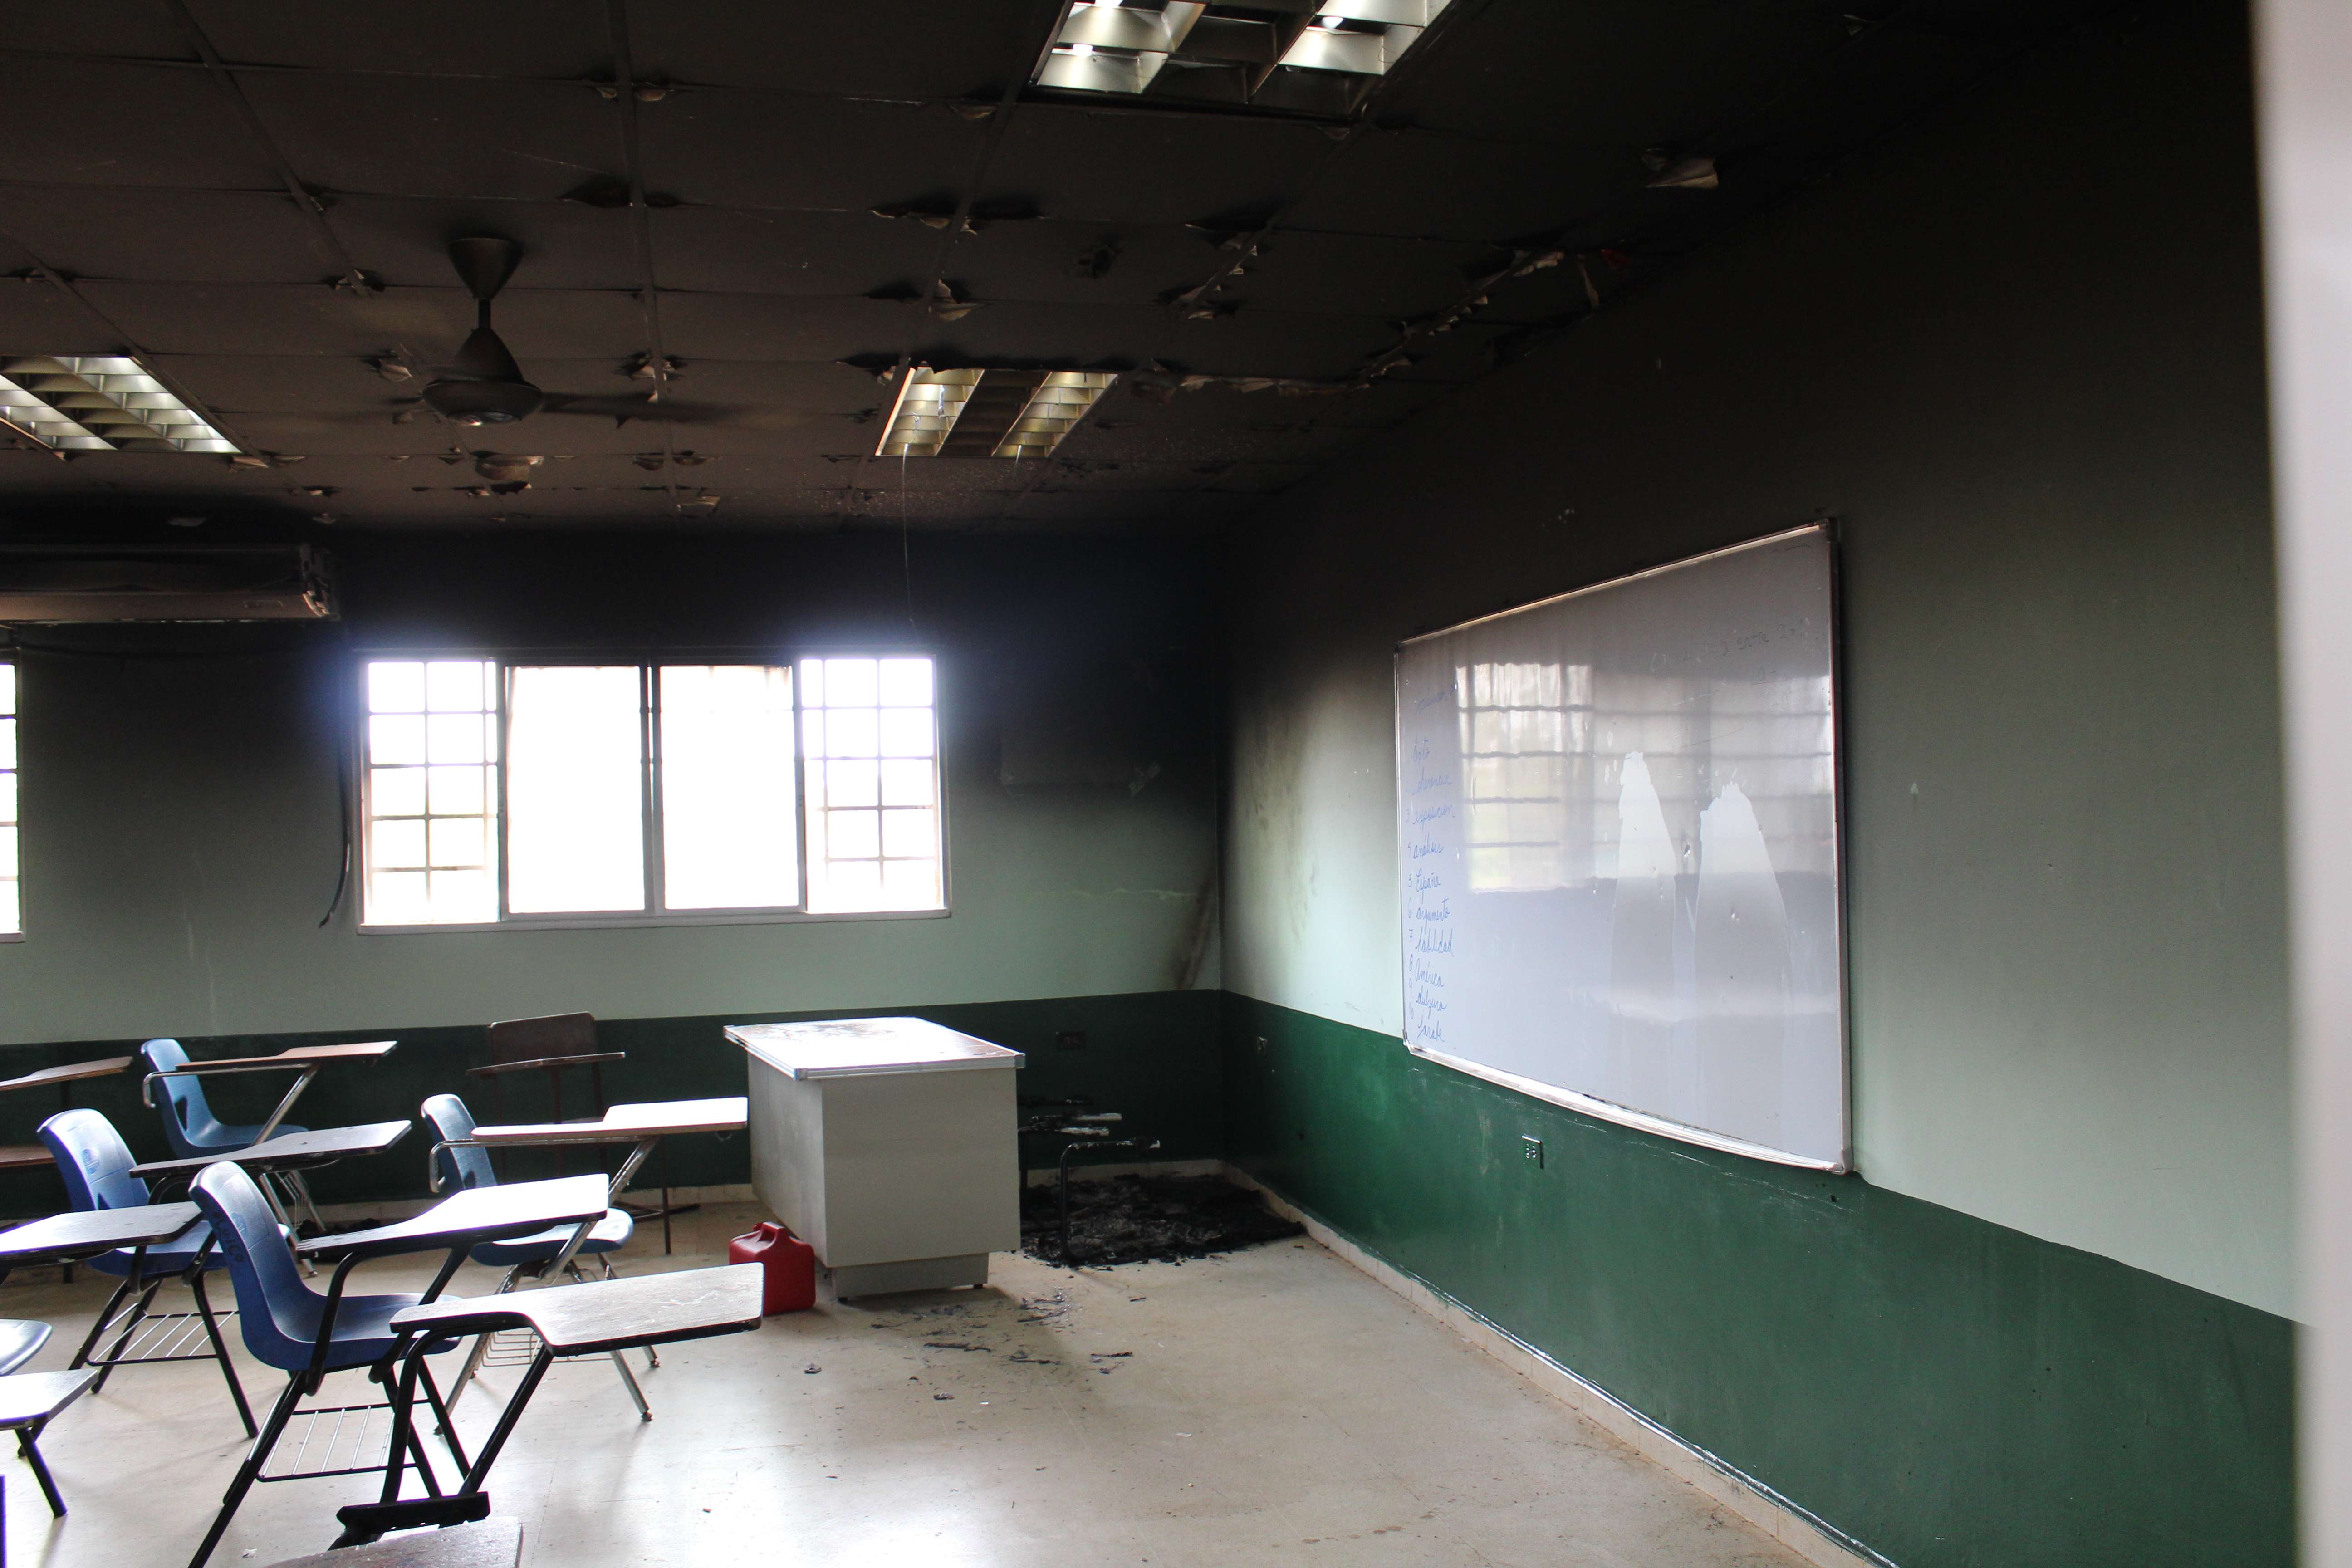 Vista general del aula afectada por el incendio. Foto: Eric Montenegro